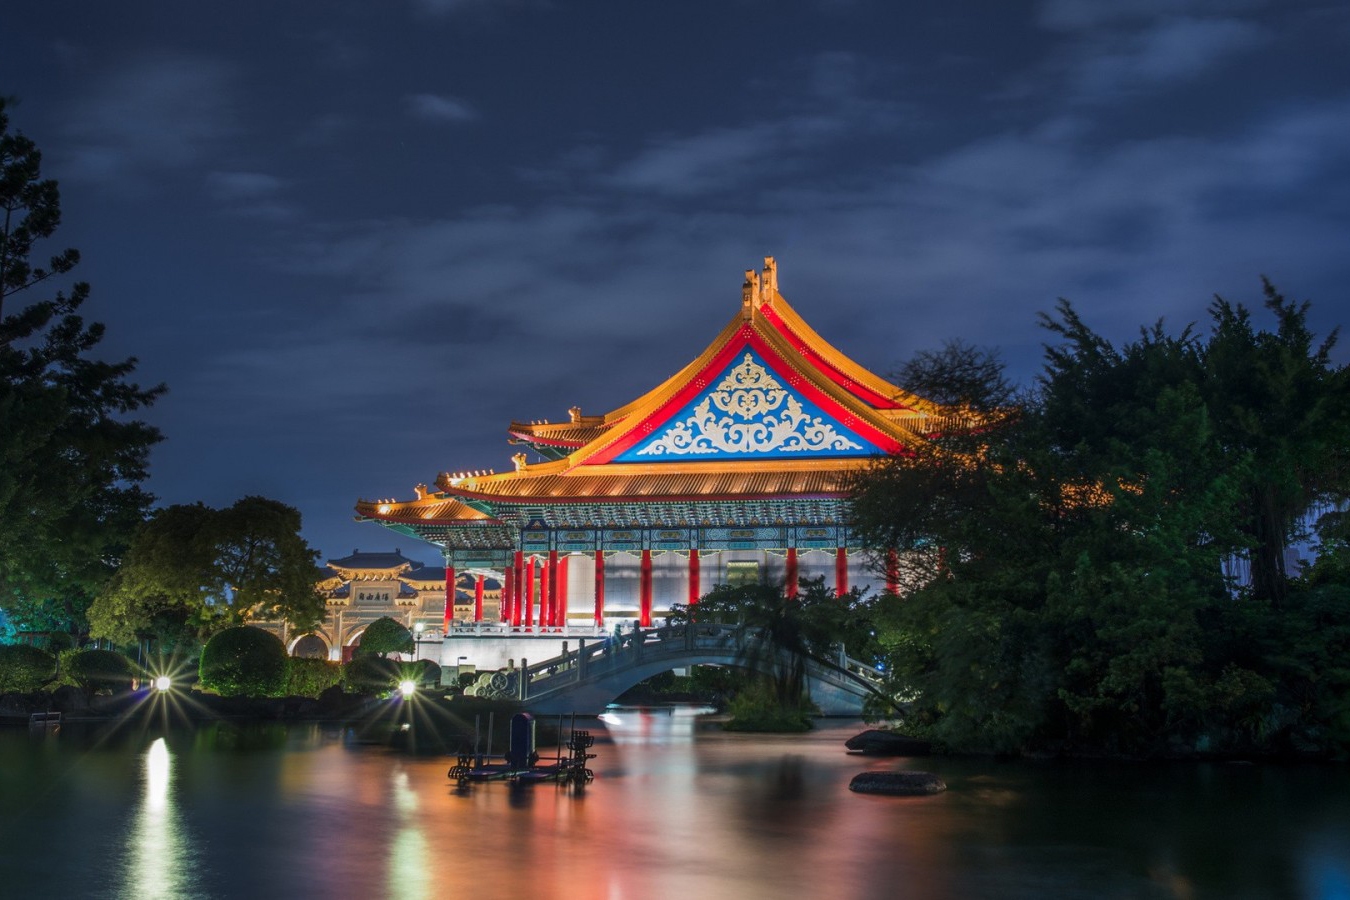 Tour du lịch Đài Loan : Đài Bắc - Đài Trung - Cao Hùng (4N3Đ) bay Vietnam Airlines